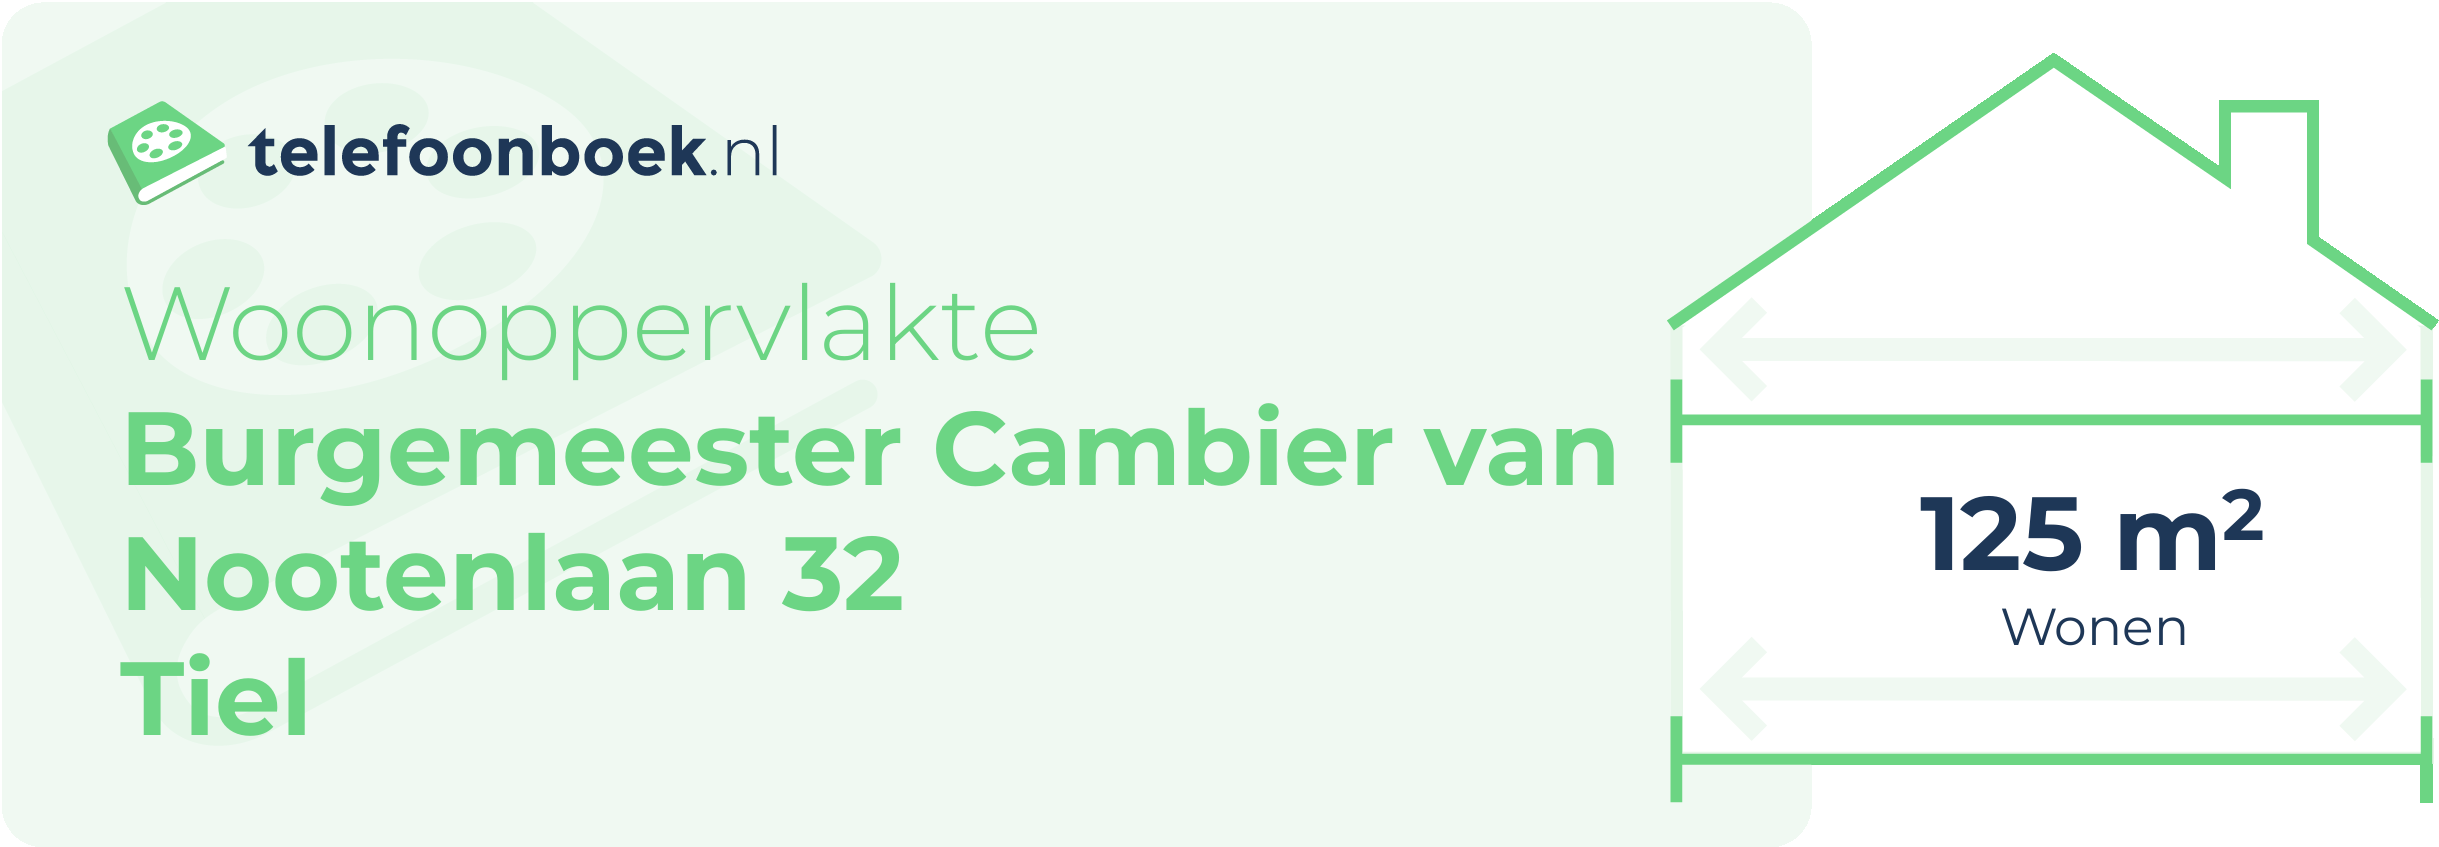 Woonoppervlakte Burgemeester Cambier Van Nootenlaan 32 Tiel